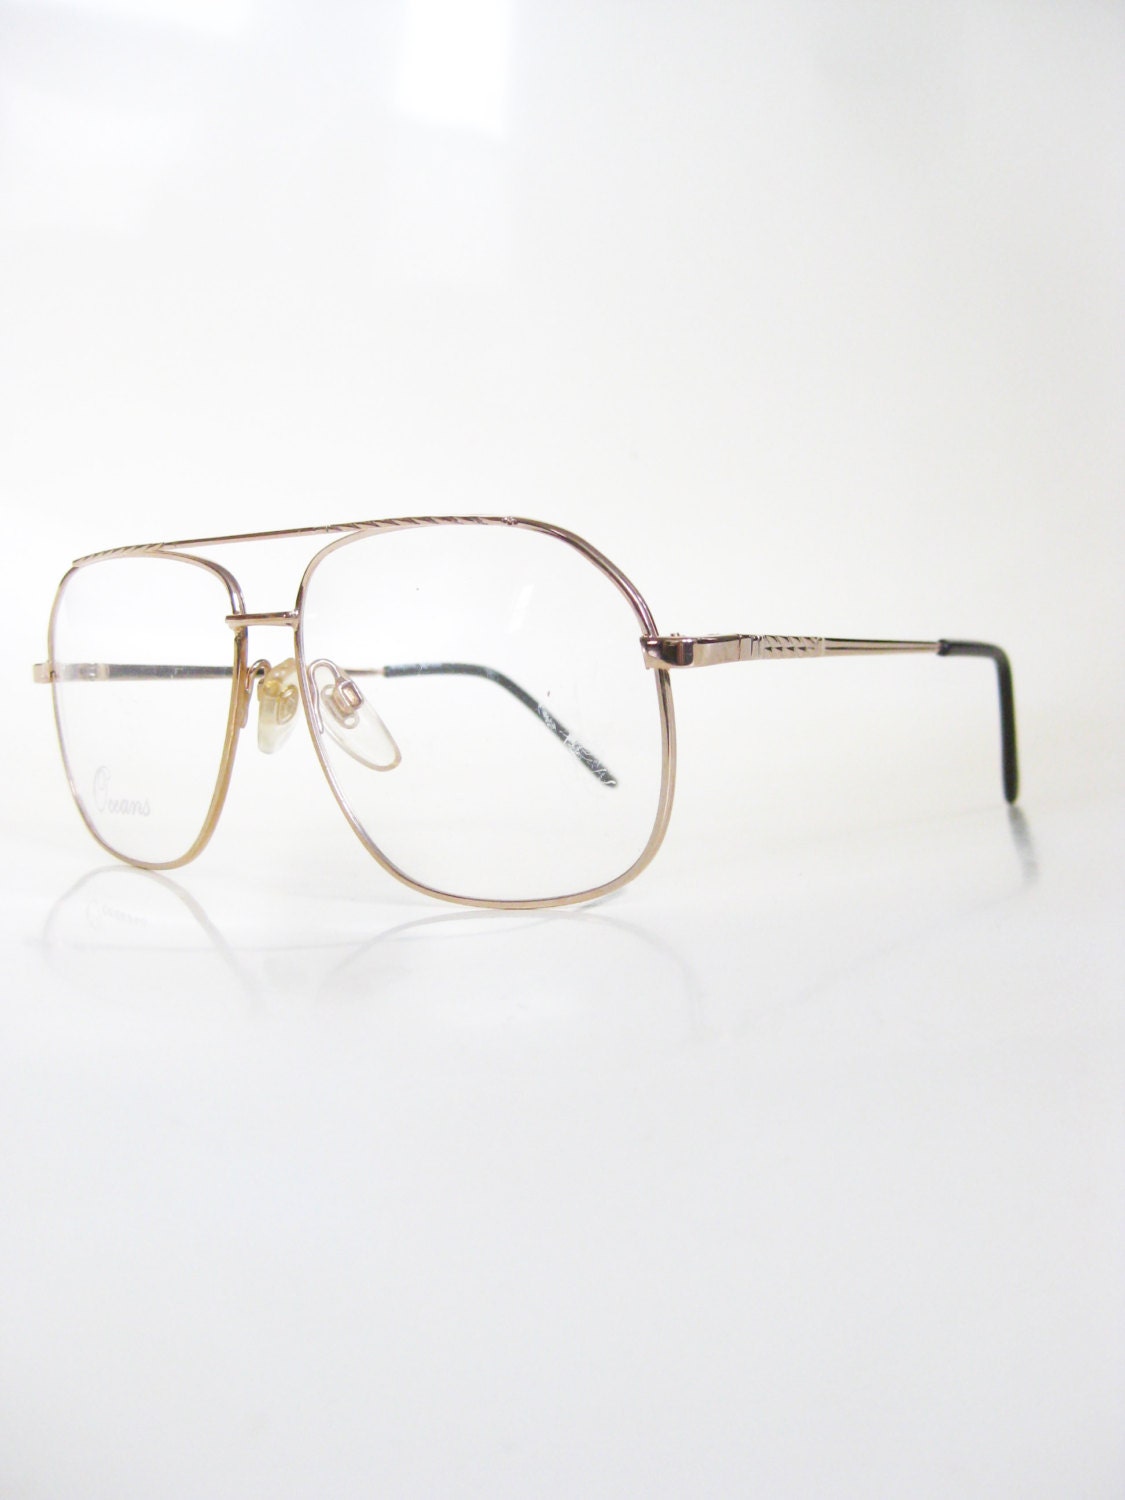 Vintage Gold Aviator Mens Eyeglasses Glasses by OliverandAlexa